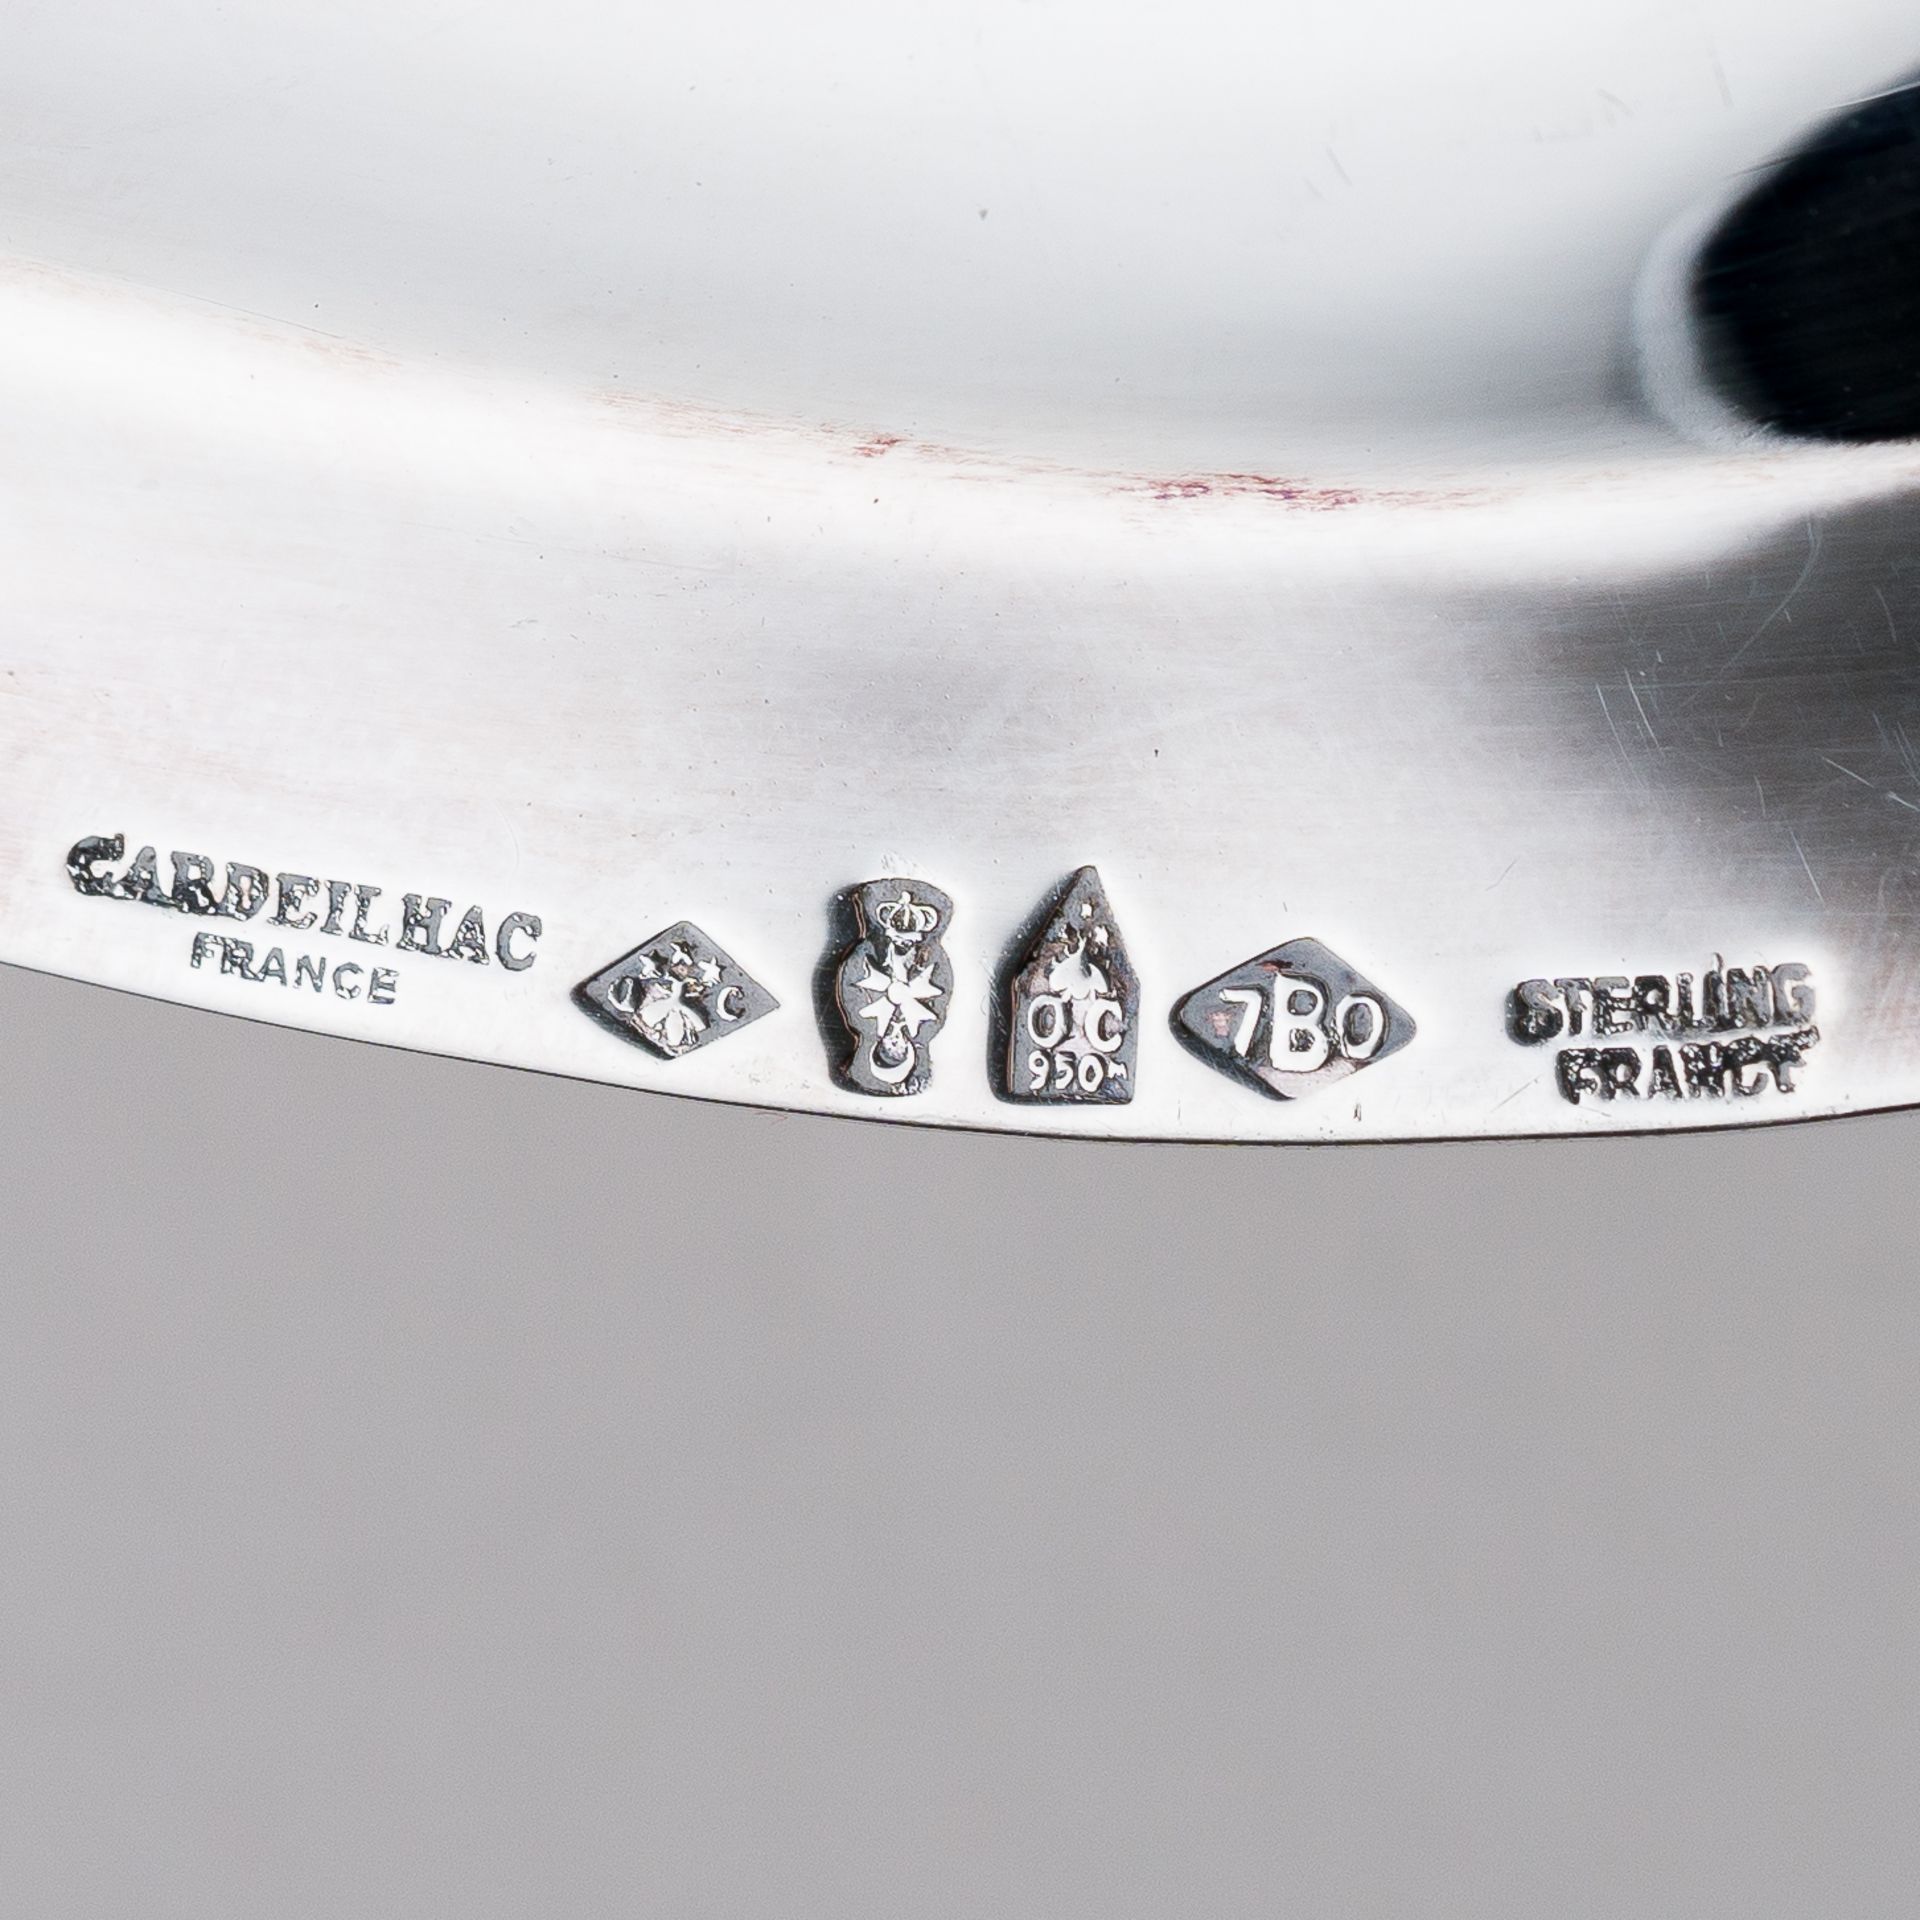 Silber Sauciere mit Monogramm Cardeilhac France 0,8 kg 925 Sterling Silber - Bild 7 aus 7